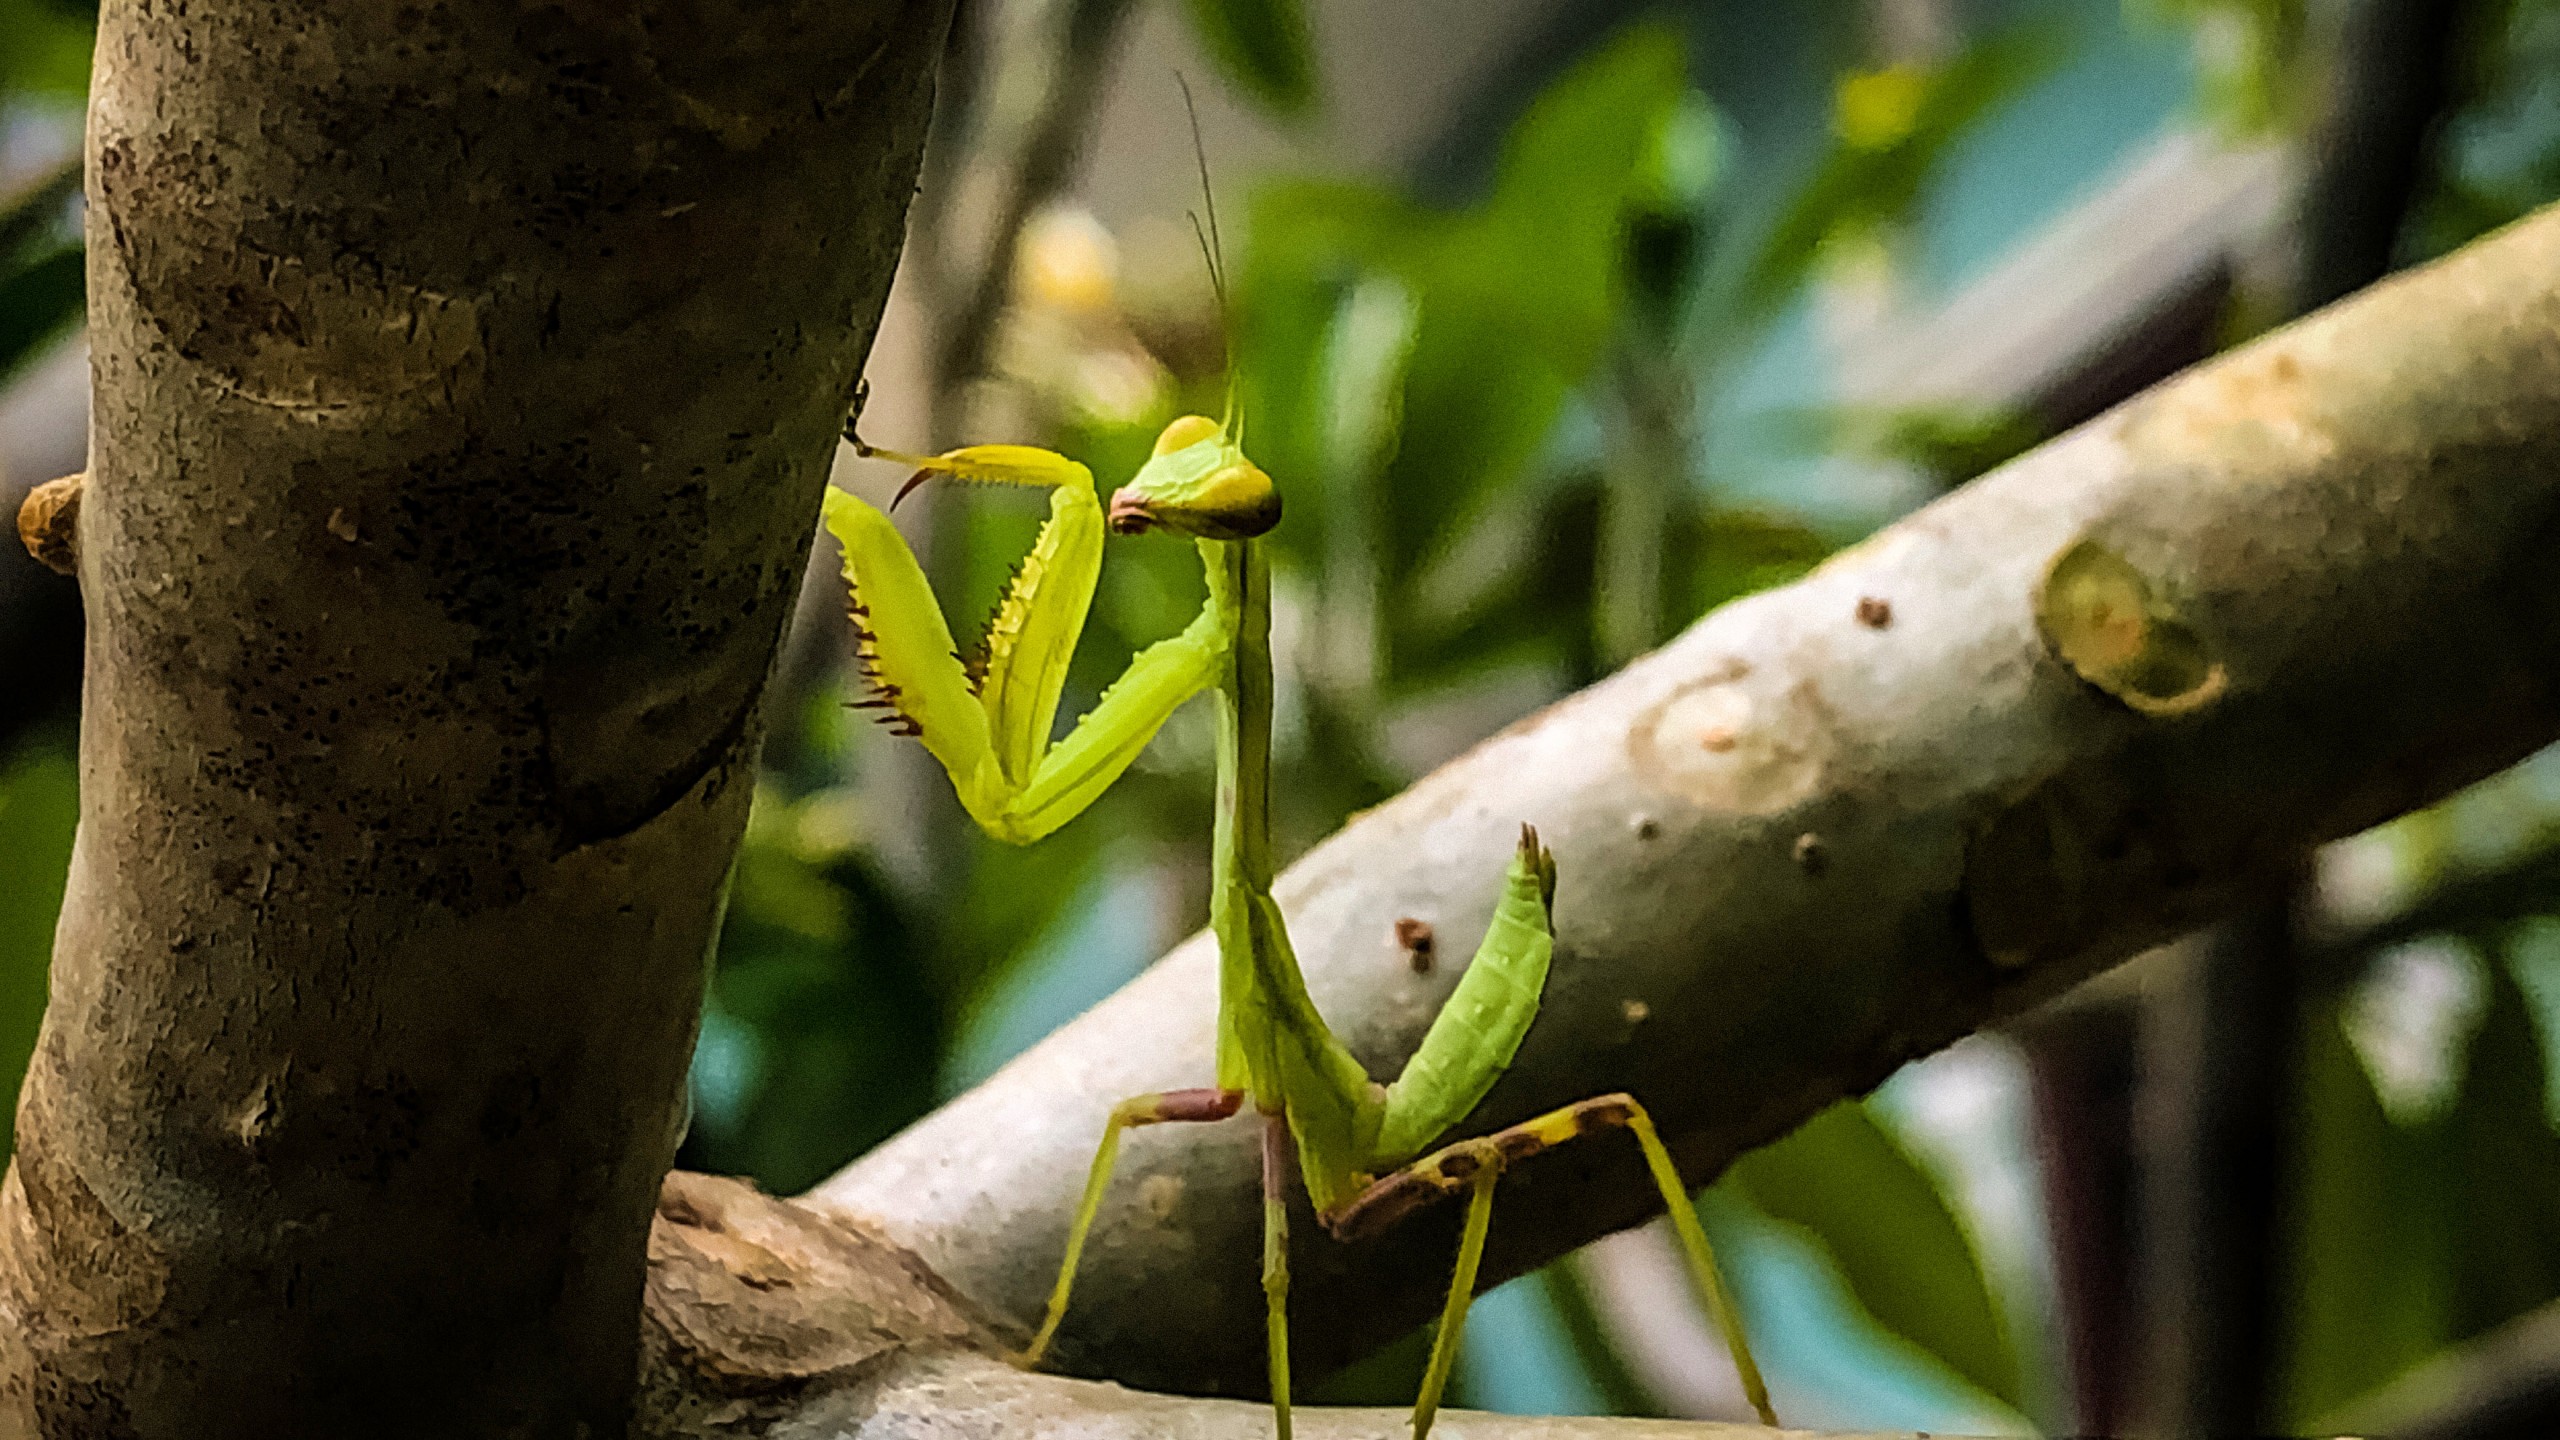 Praying Mantis Close-up